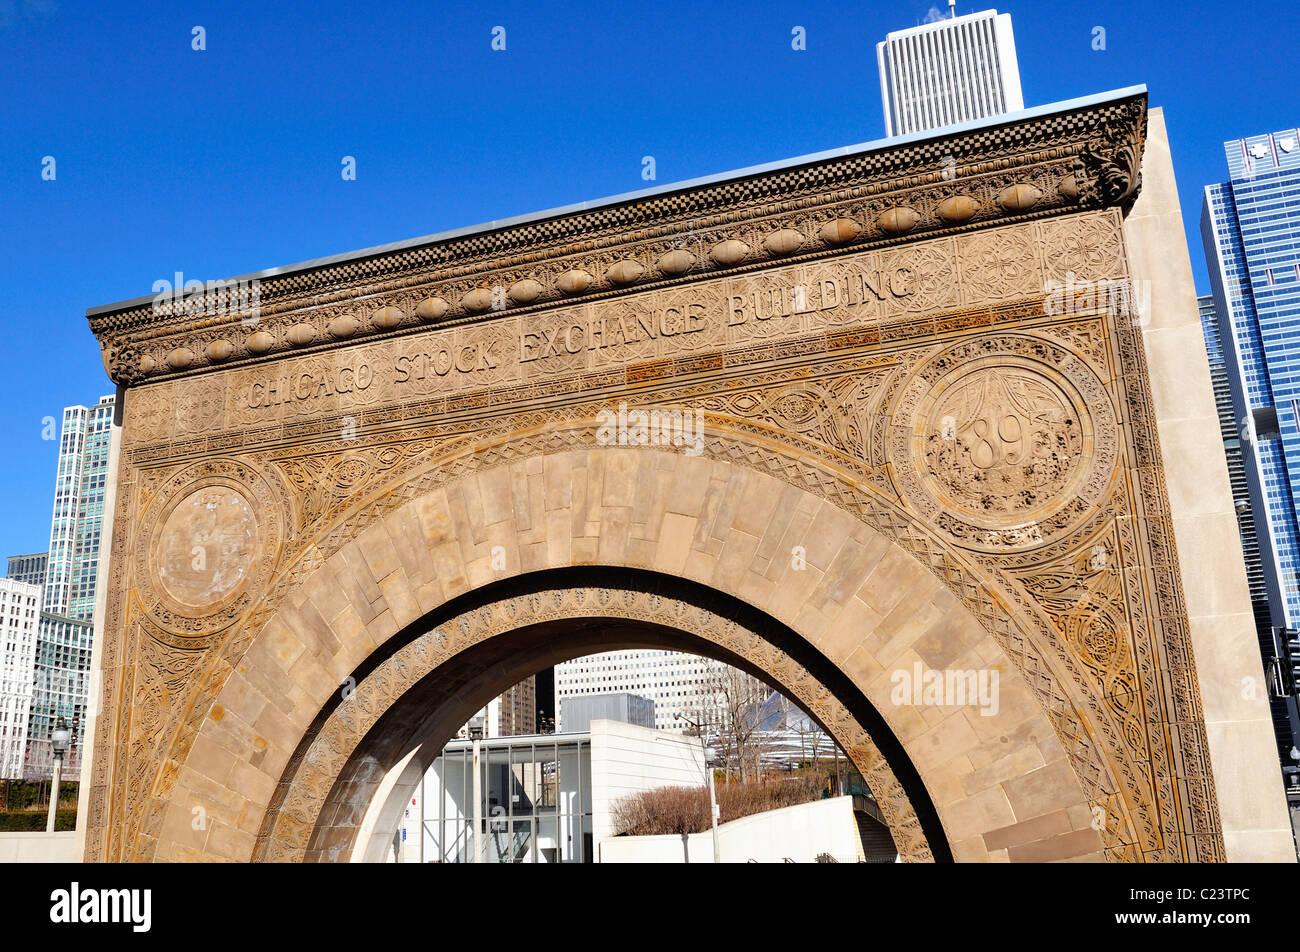 El arco de la Bolsa de Chicago, construida en el año 1893 reside fuera del Instituto de Arte de Chicago. Chicago, Illinois, Estados Unidos. Foto de stock